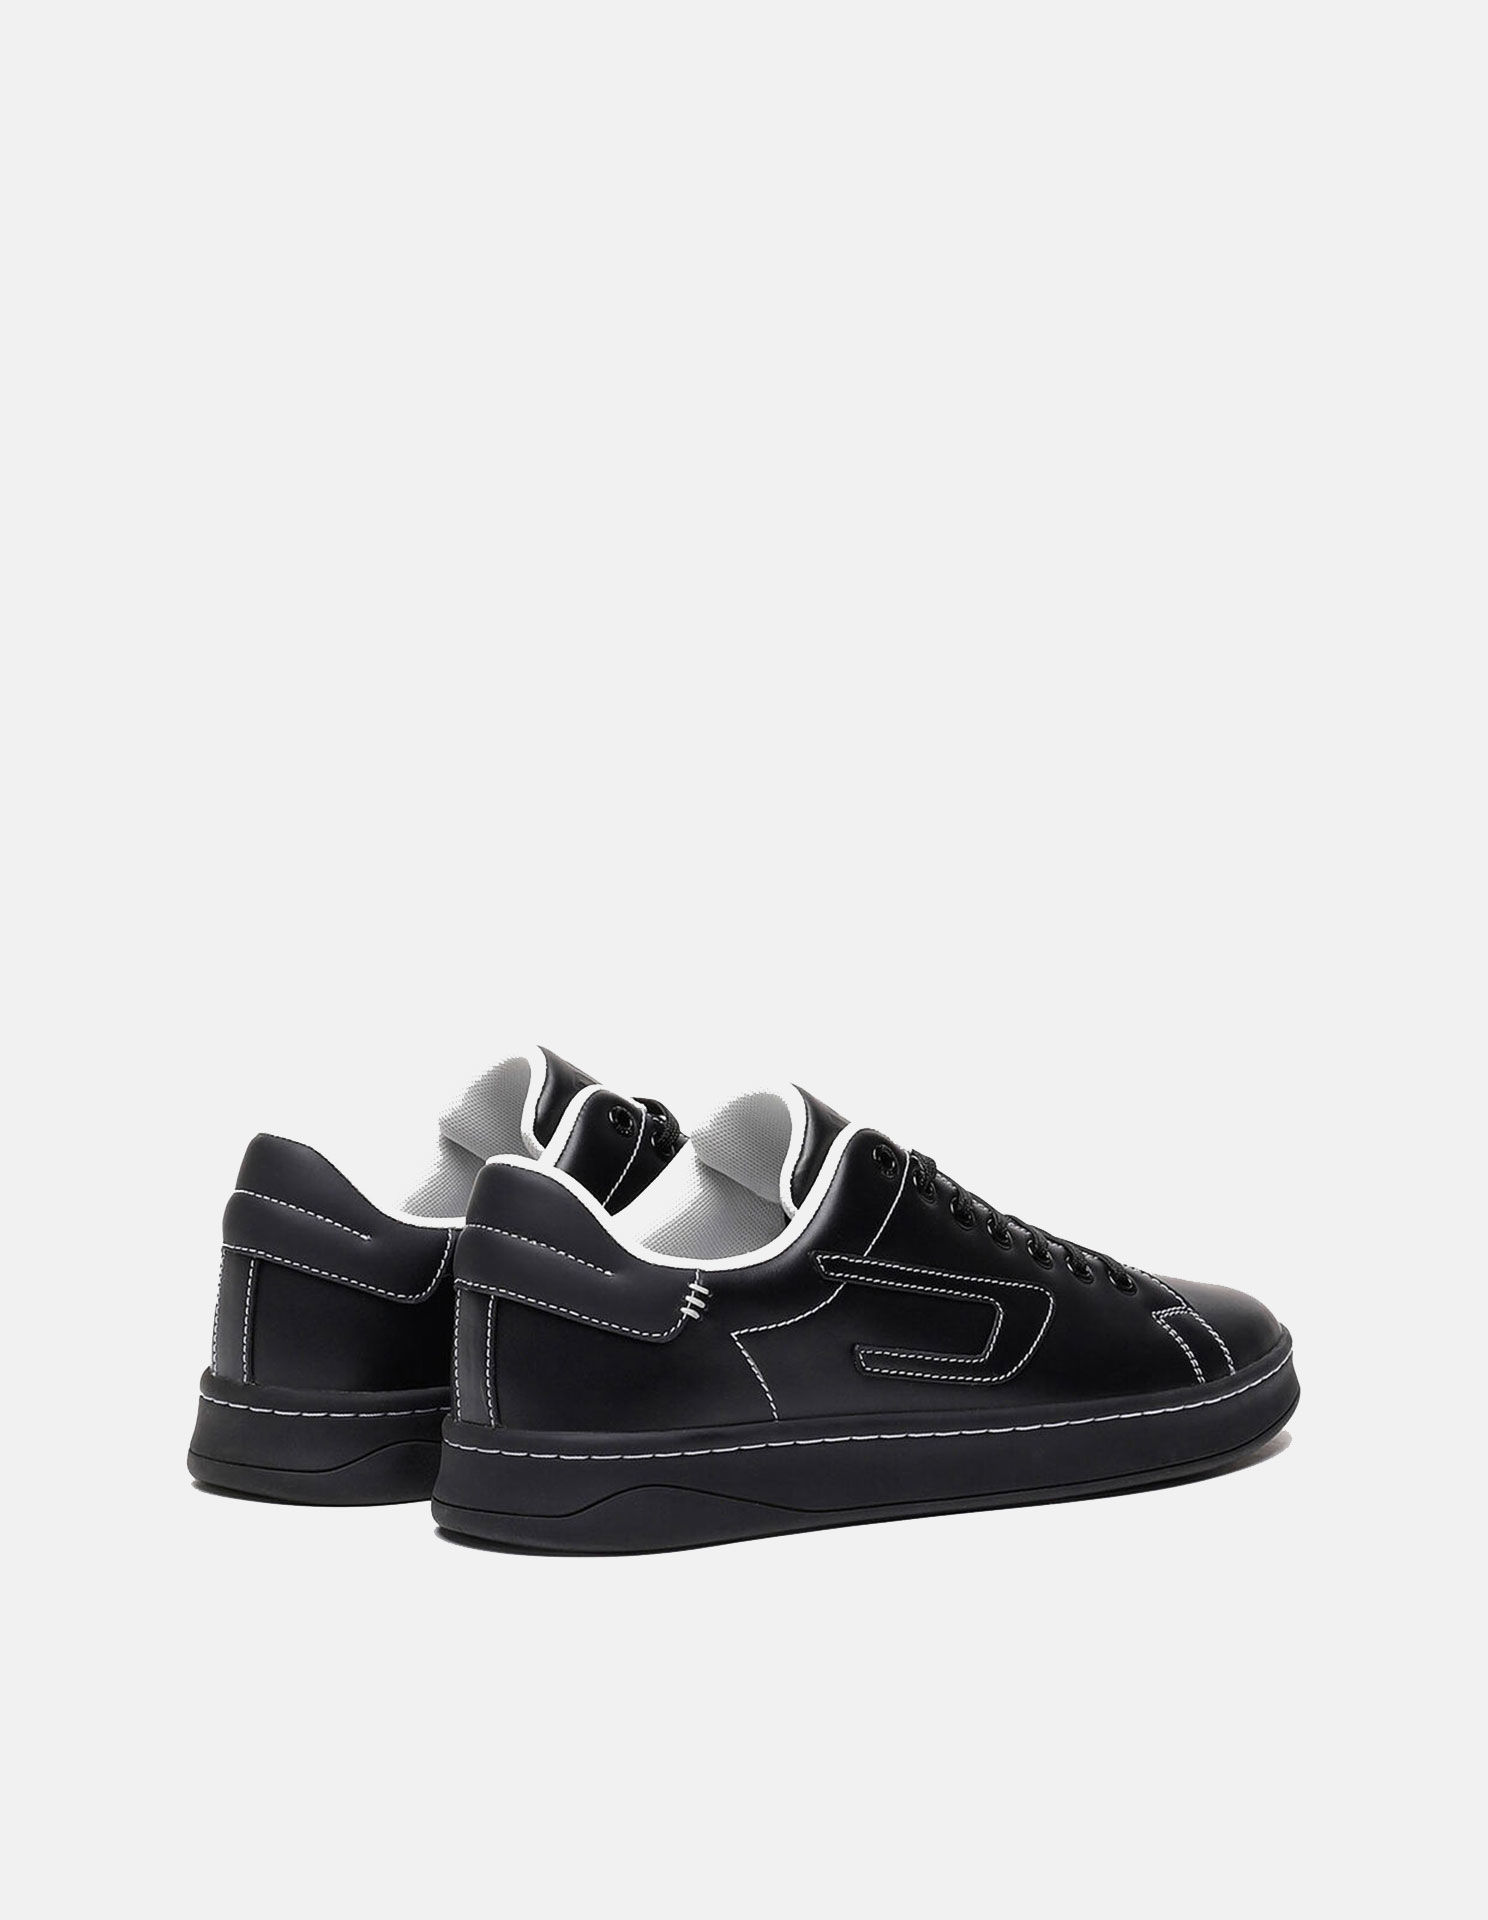 Diesel Athene Lace Black Sneaker - George Harrison | Designer Menswear ...